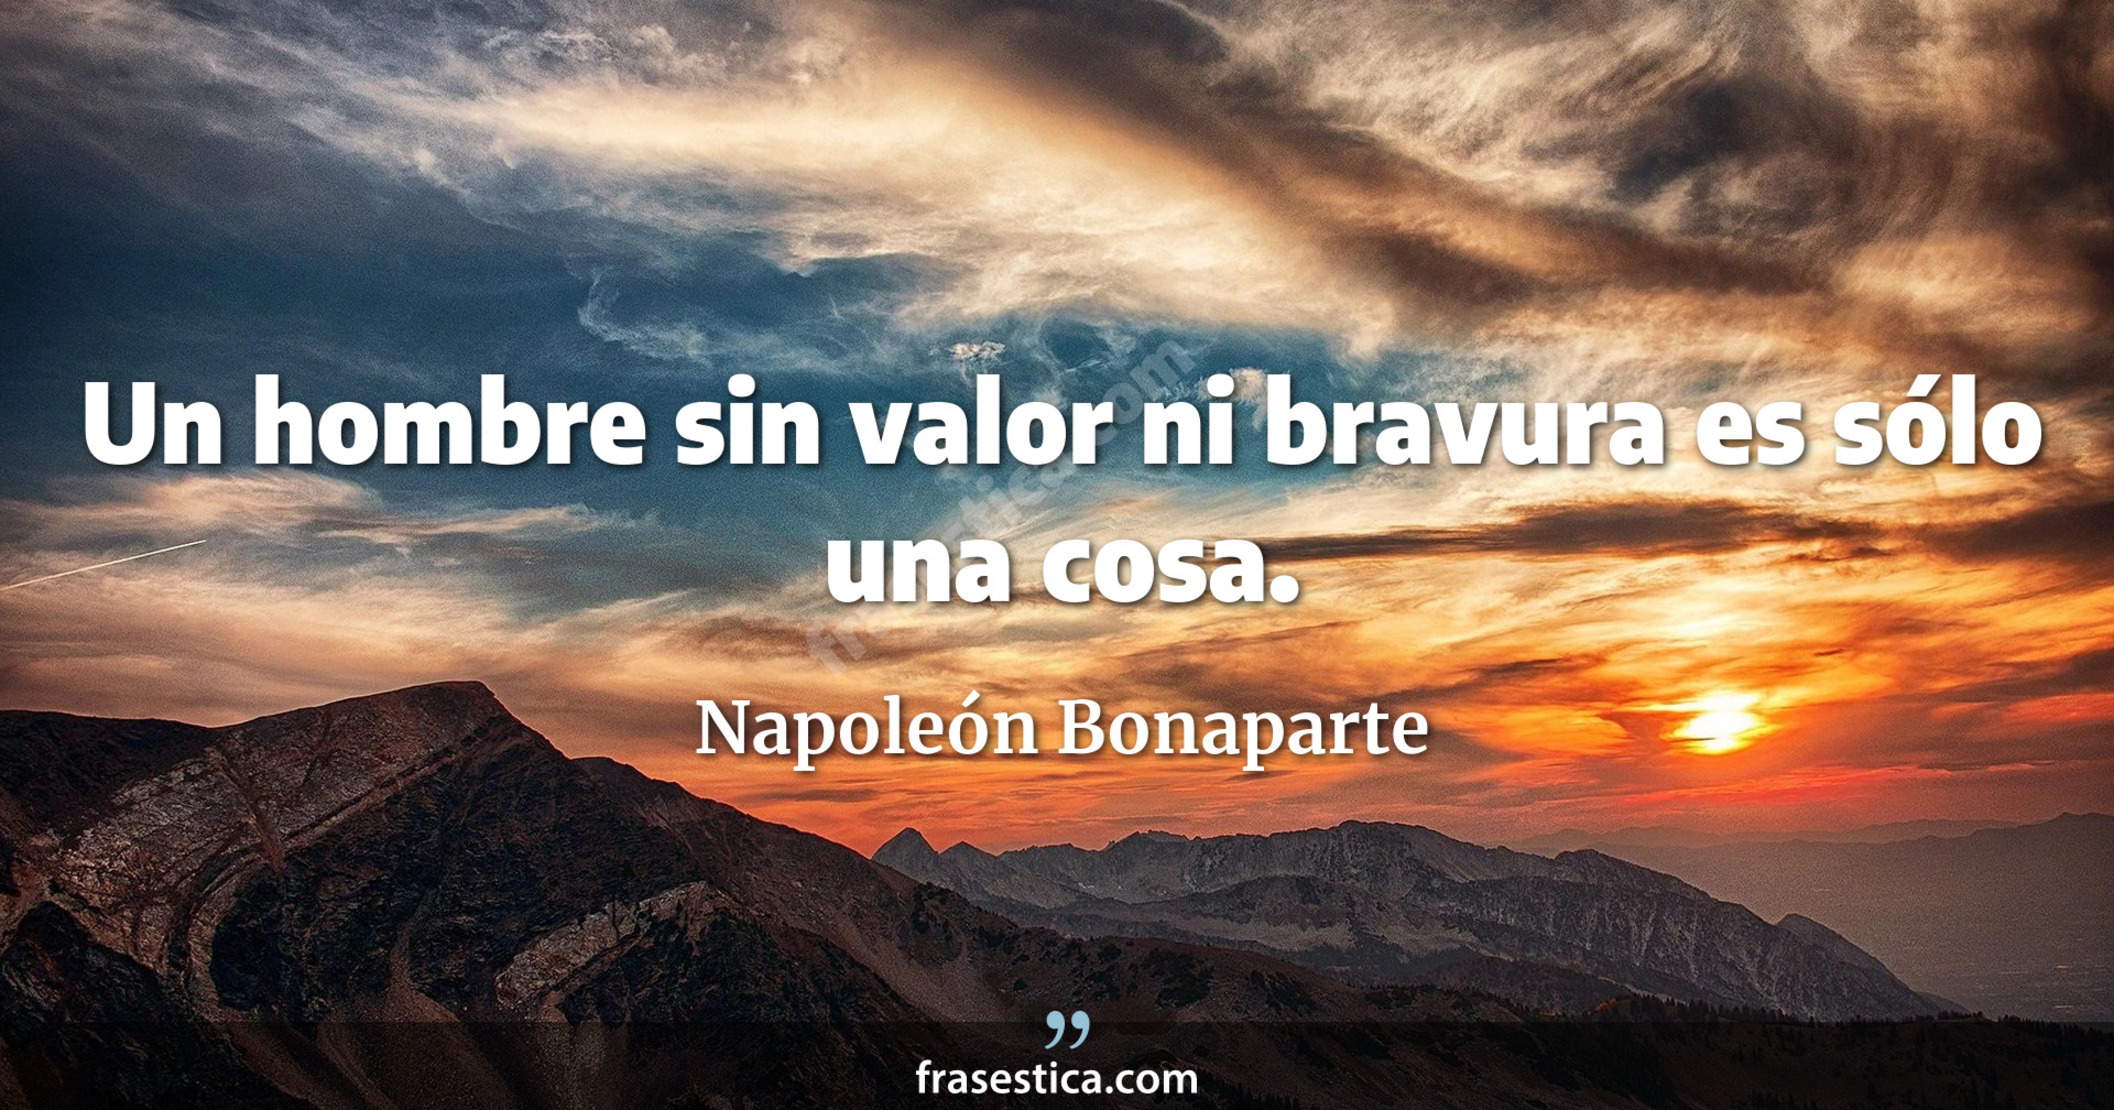 Un hombre sin valor ni bravura es sólo una cosa. - Napoleón Bonaparte